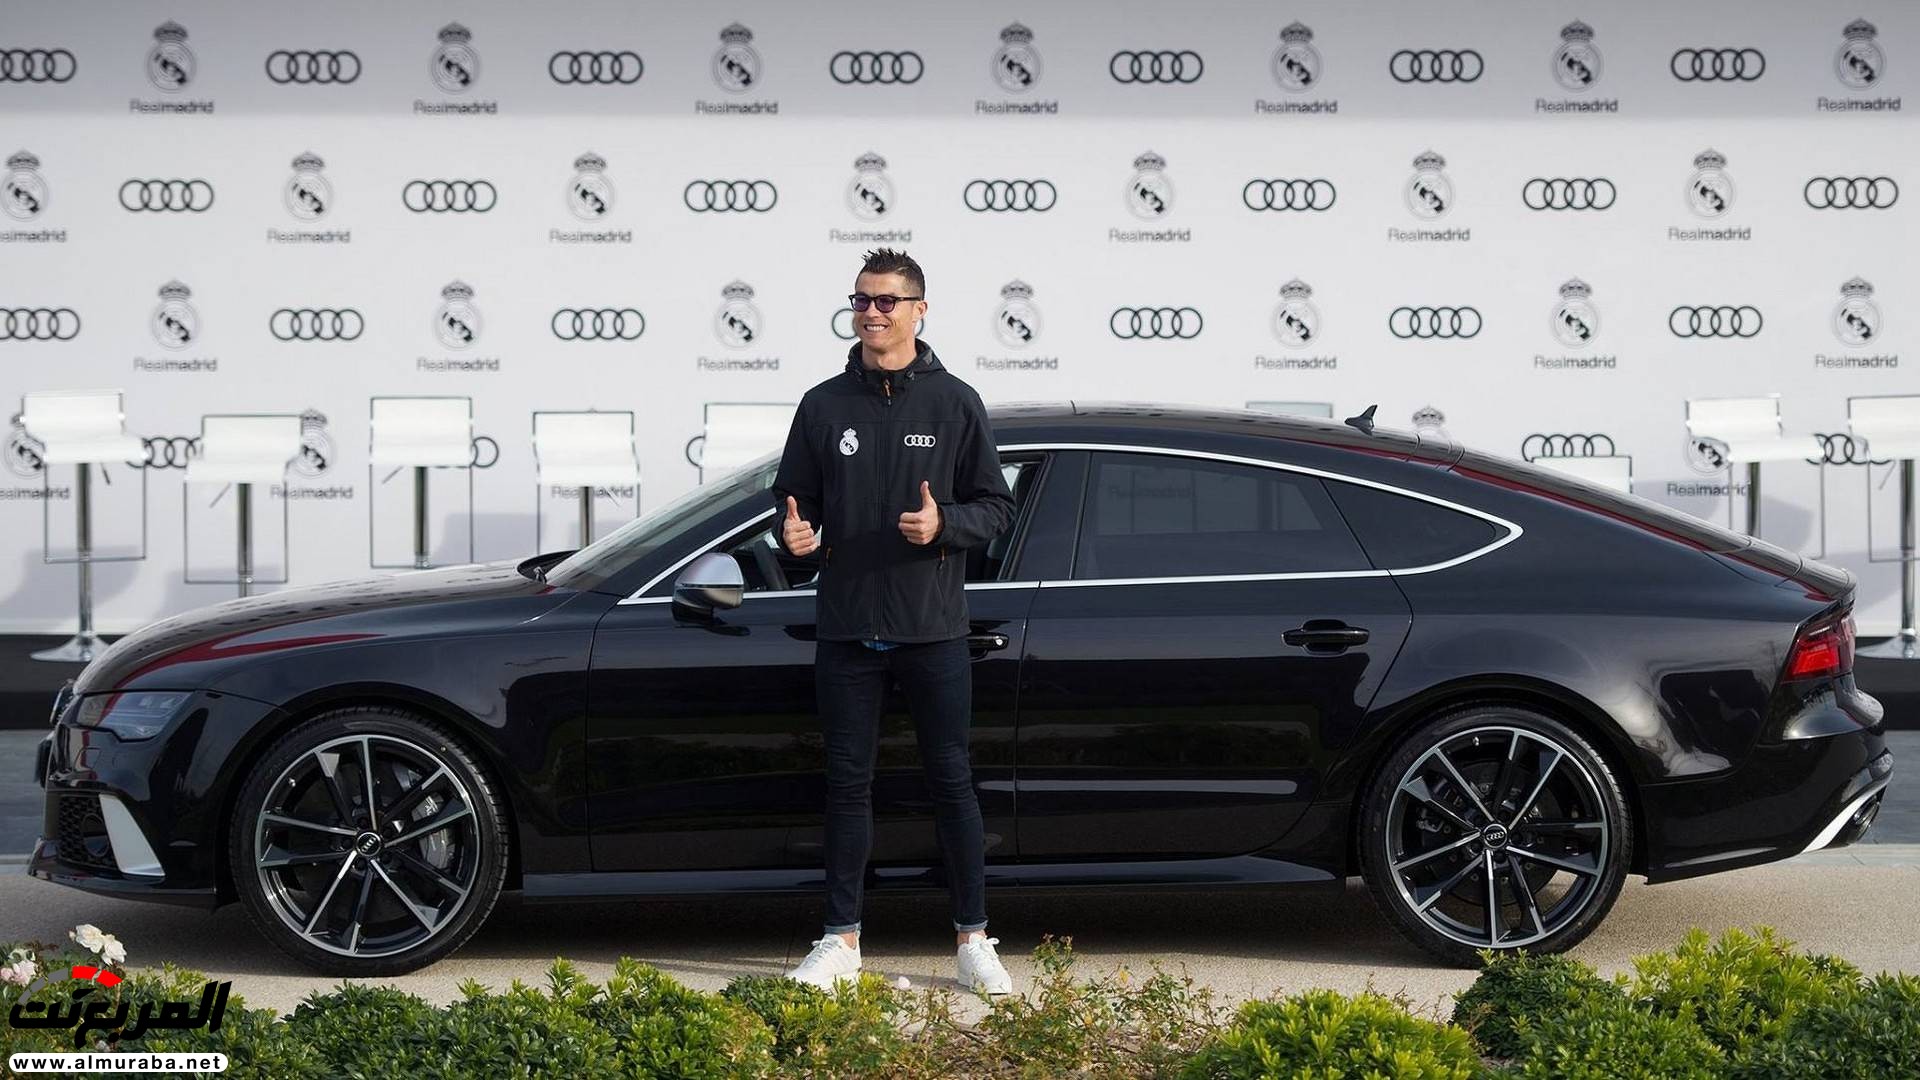 لاعبو ريال مدريد يستلمون سيارات أودي الجديدة "فيديو وصور" 1